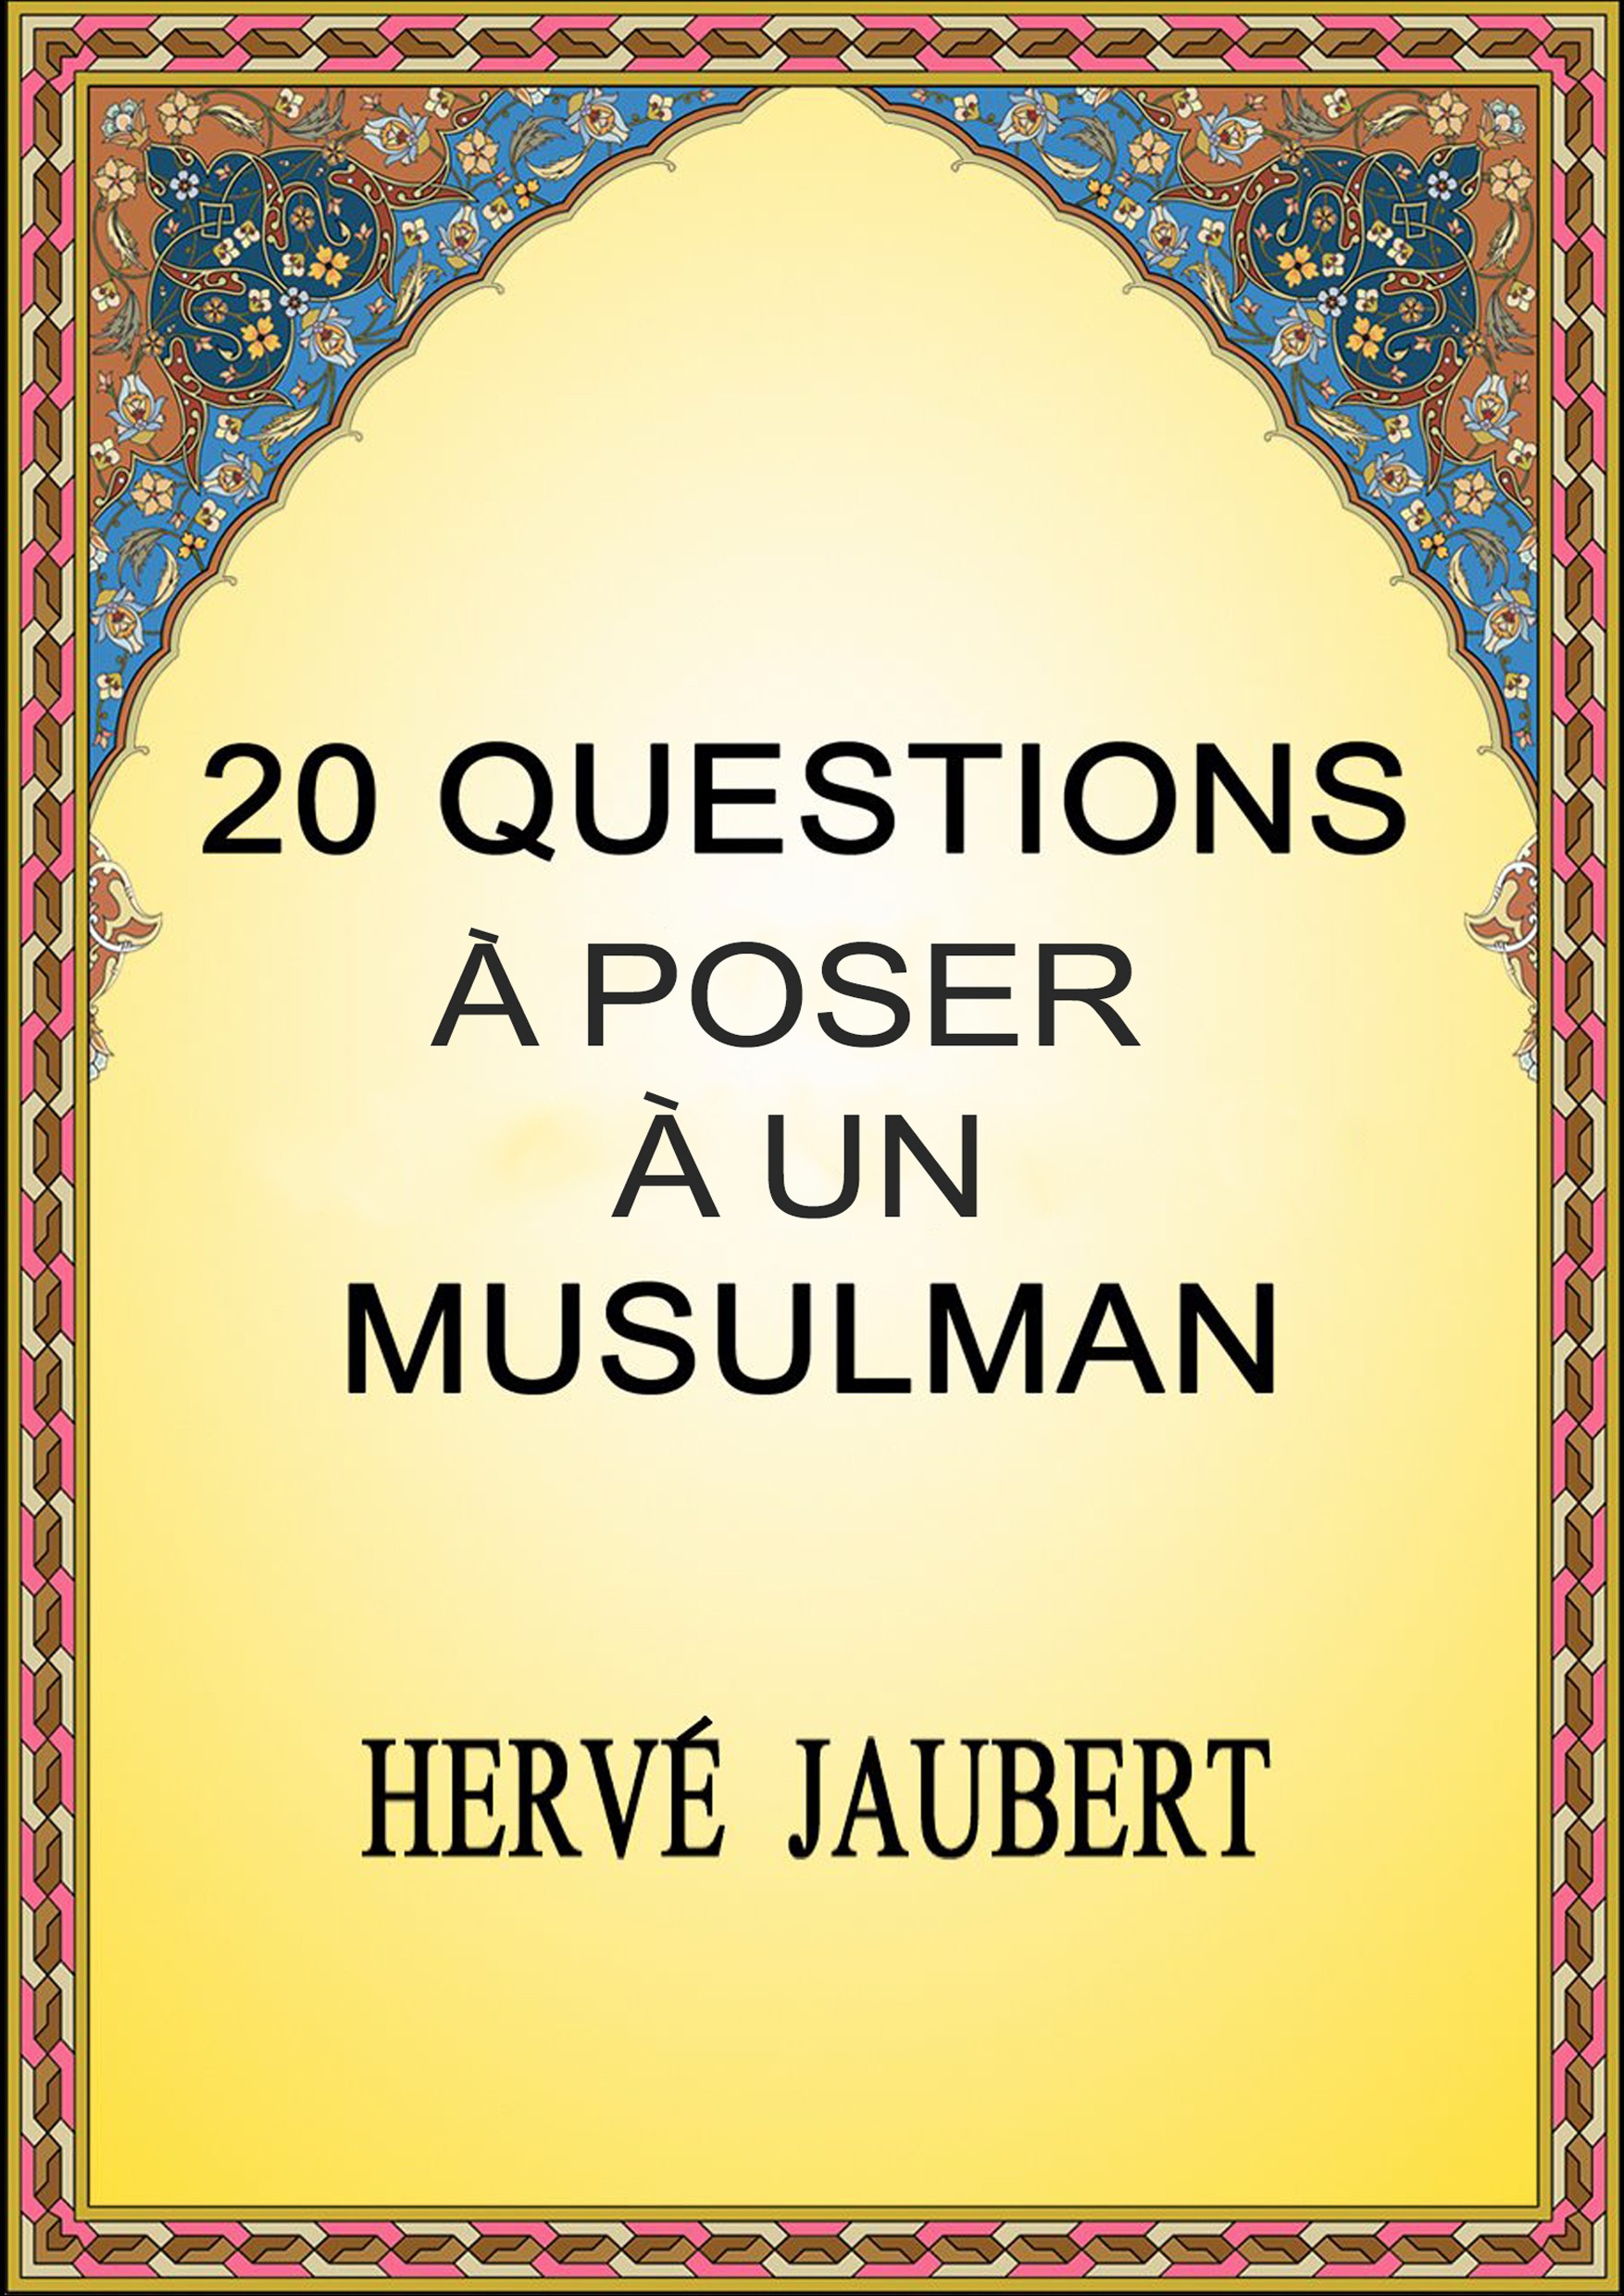 20 QUESTIONS A POSER A UN MSULMAN - Herve Jaubert